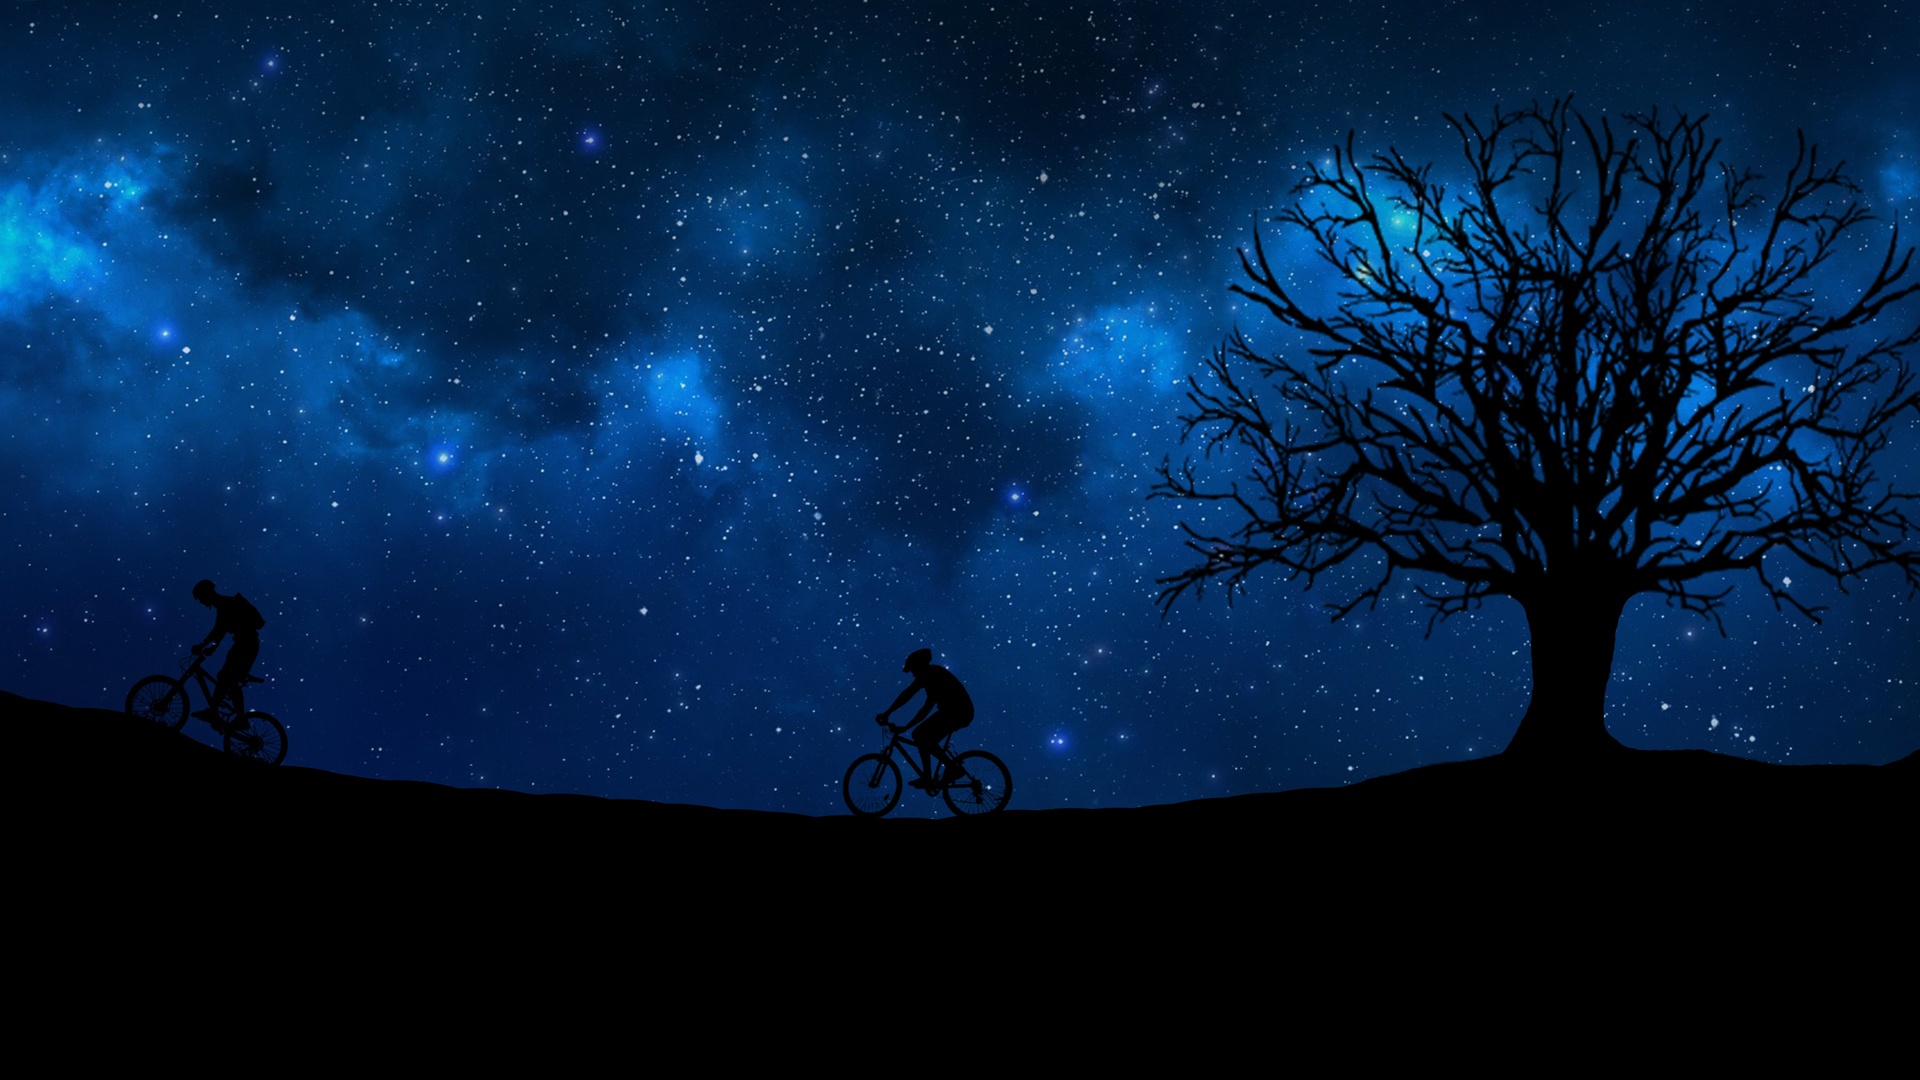 骑自行车夜树星空4k壁纸壁纸骑自行车壁纸图片 桌面壁纸图片 壁纸下载 元气壁纸